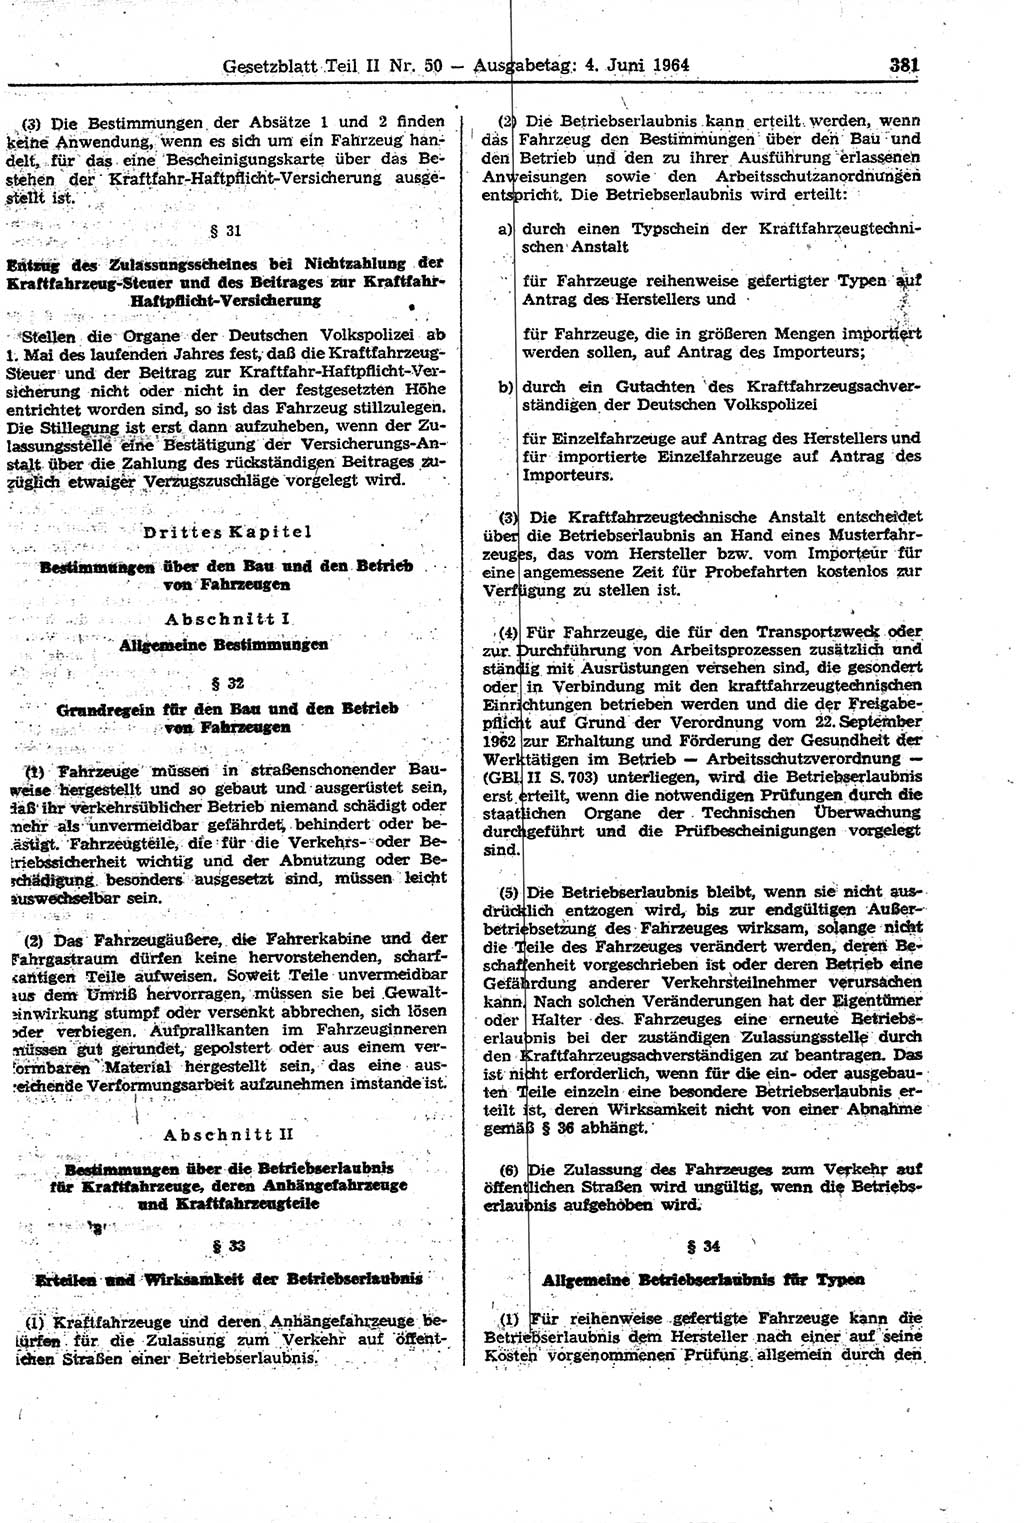 Gesetzblatt (GBl.) der Deutschen Demokratischen Republik (DDR) Teil ⅠⅠ 1964, Seite 381 (GBl. DDR ⅠⅠ 1964, S. 381)